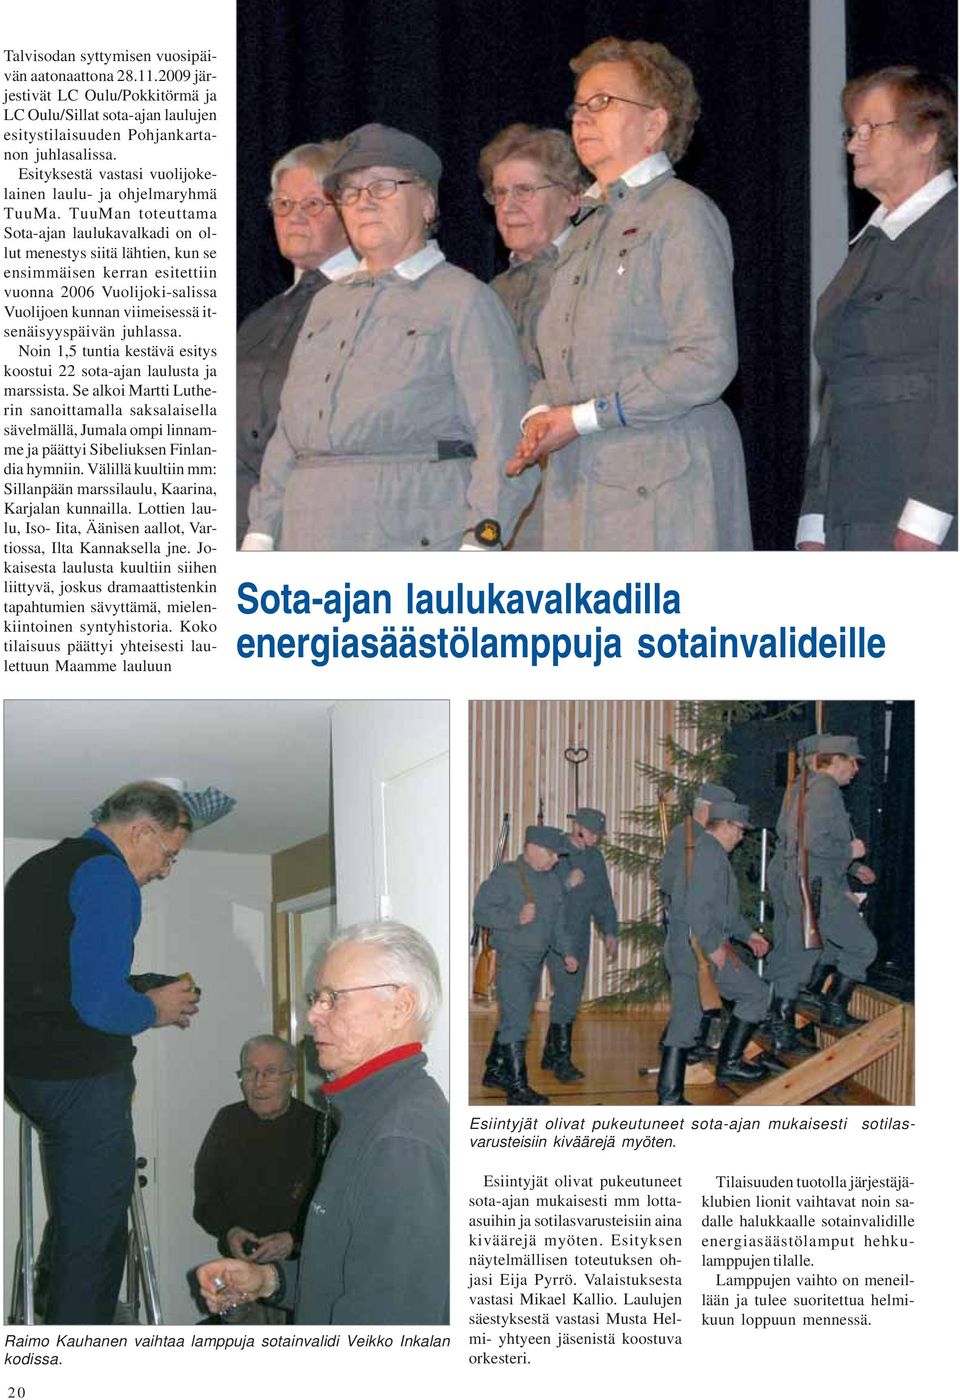 TuuMan toteuttama Sota-ajan laulukavalkadi on ollut menestys siitä lähtien, kun se ensimmäisen kerran esitettiin vuonna 2006 Vuolijoki-salissa Vuolijoen kunnan viimeisessä itsenäisyyspäivän juhlassa.